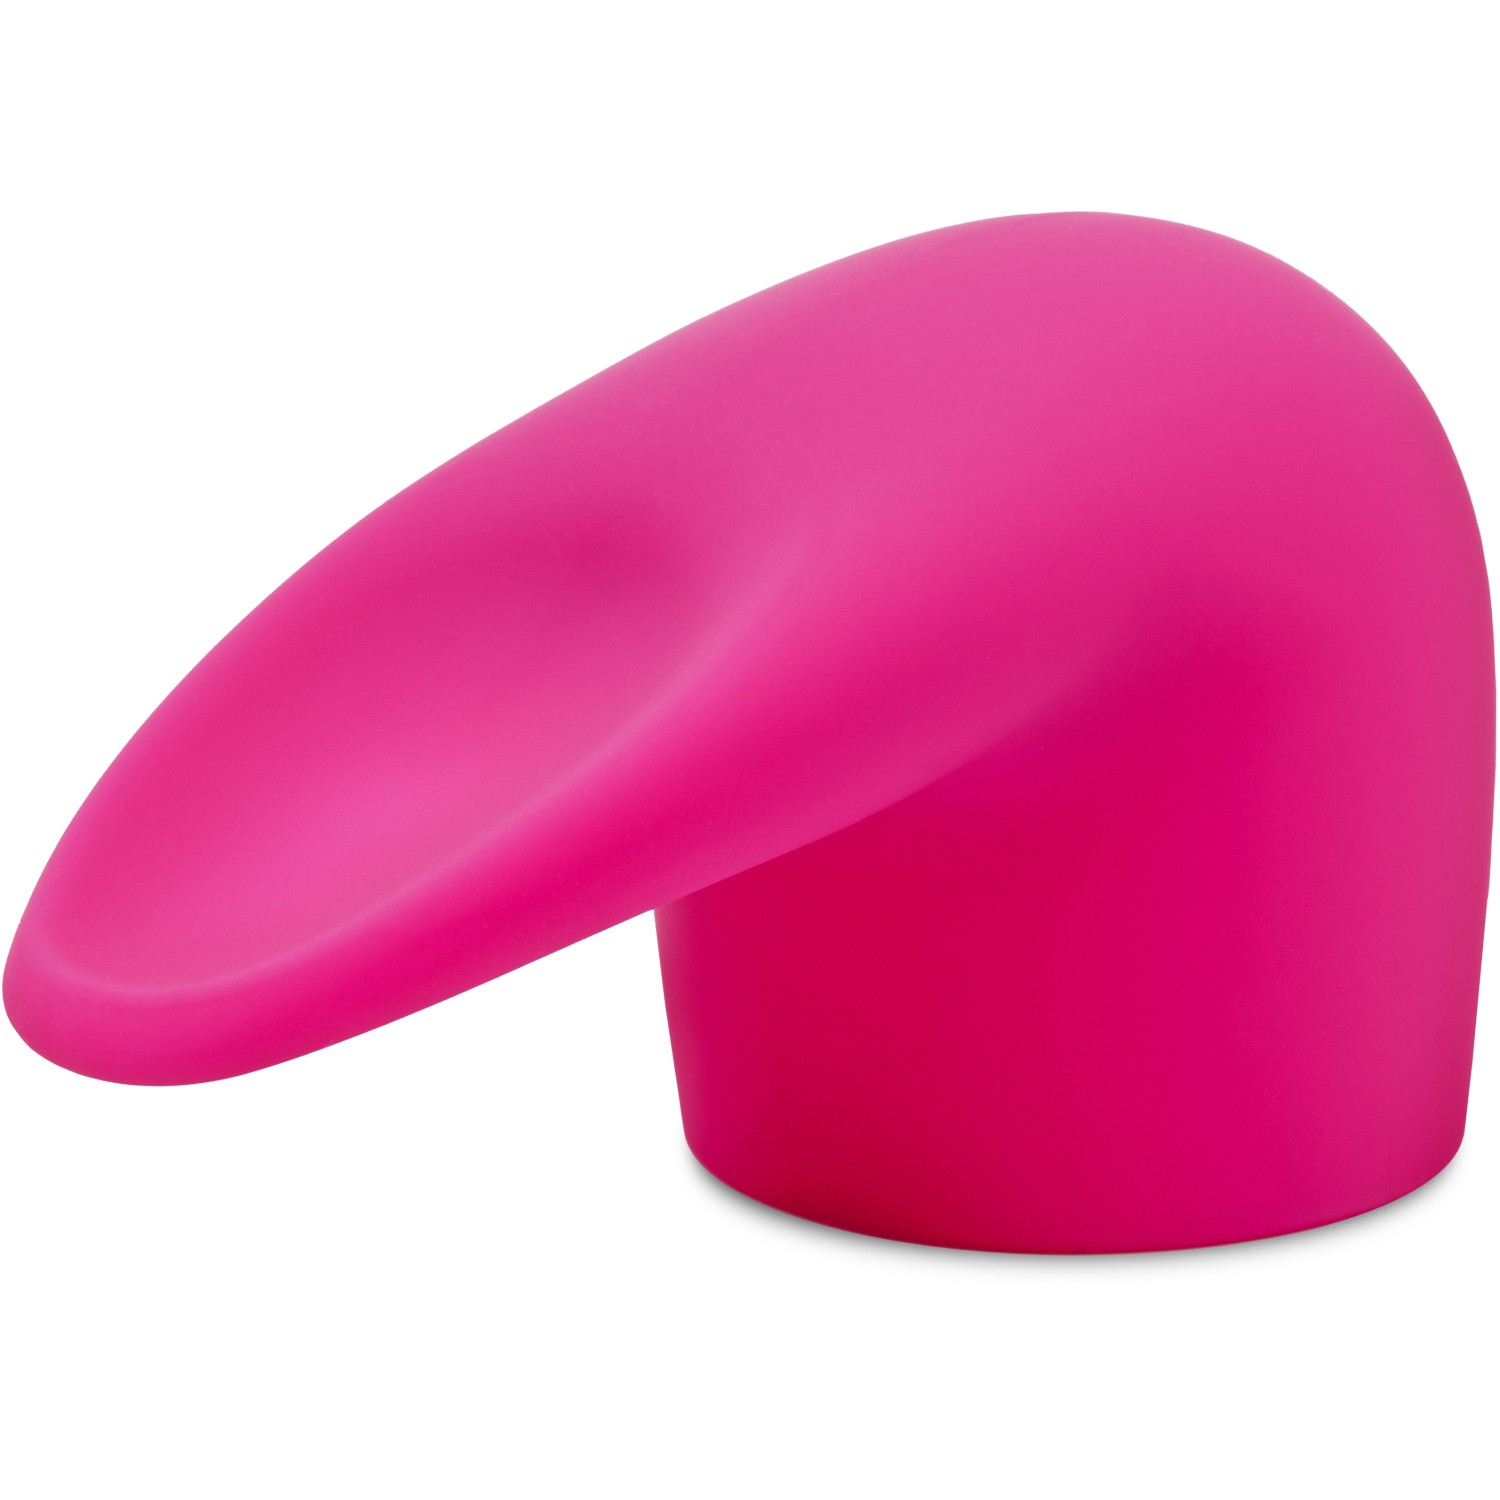 Насадка «Flick» на ванд для имитации орального секса, цвет розовый, Le Wand LW-048, из материала Силикон, длина 14 см., со скидкой